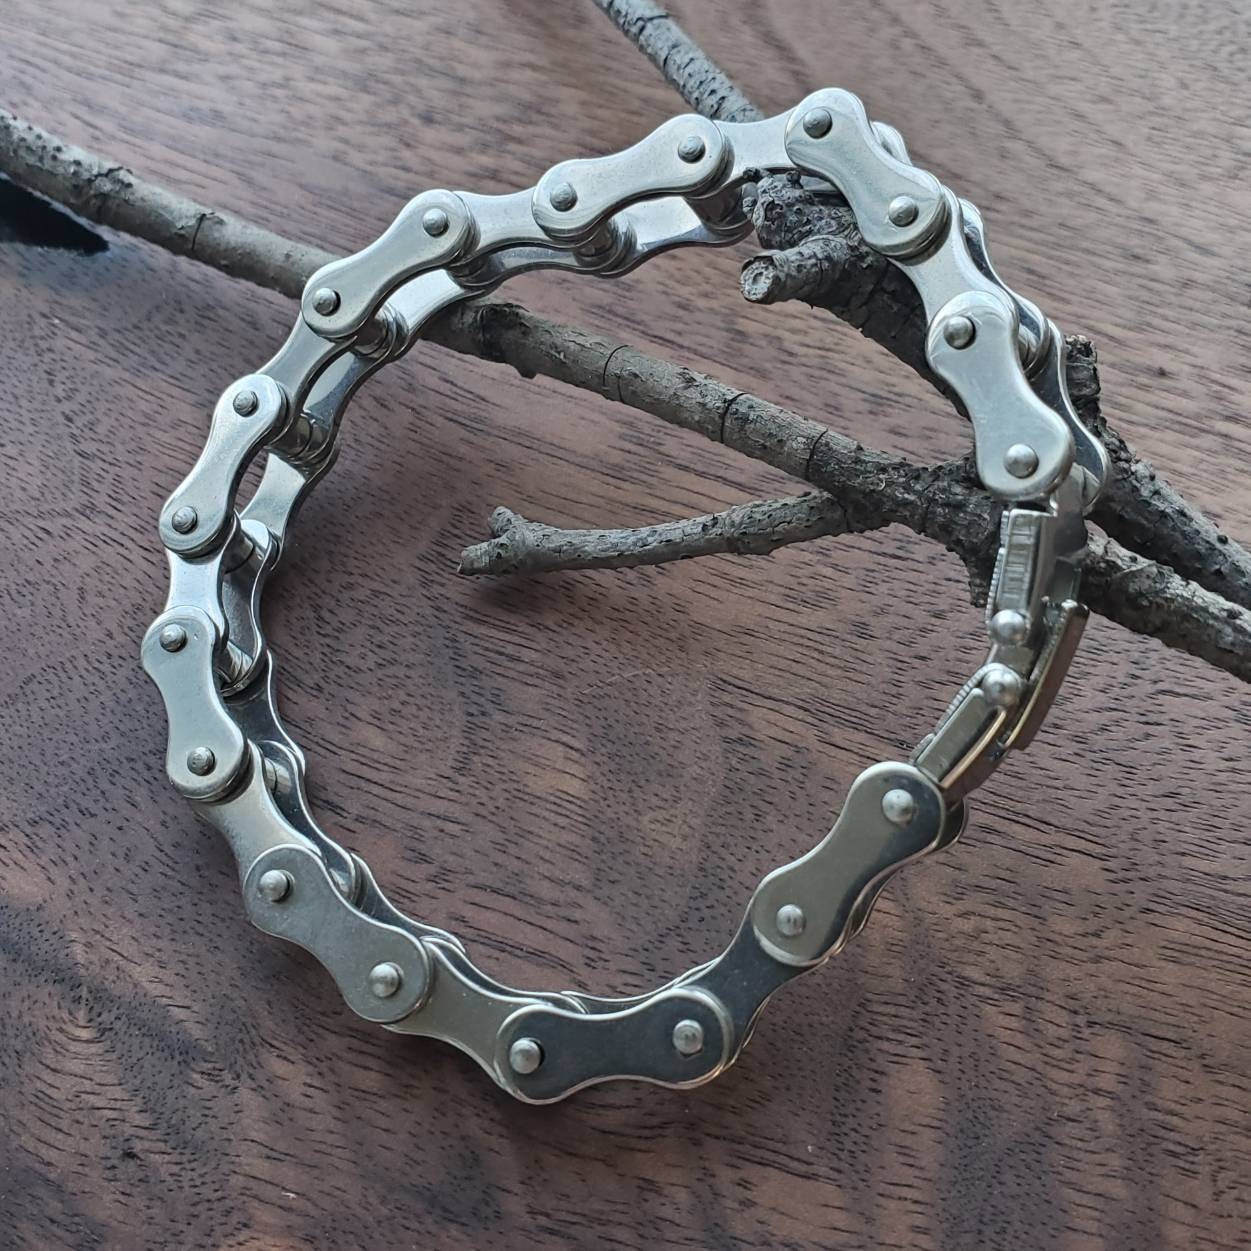 Stainless Steel Men's 8" Simple Motorcycle Chain Link Biker Bracelet 